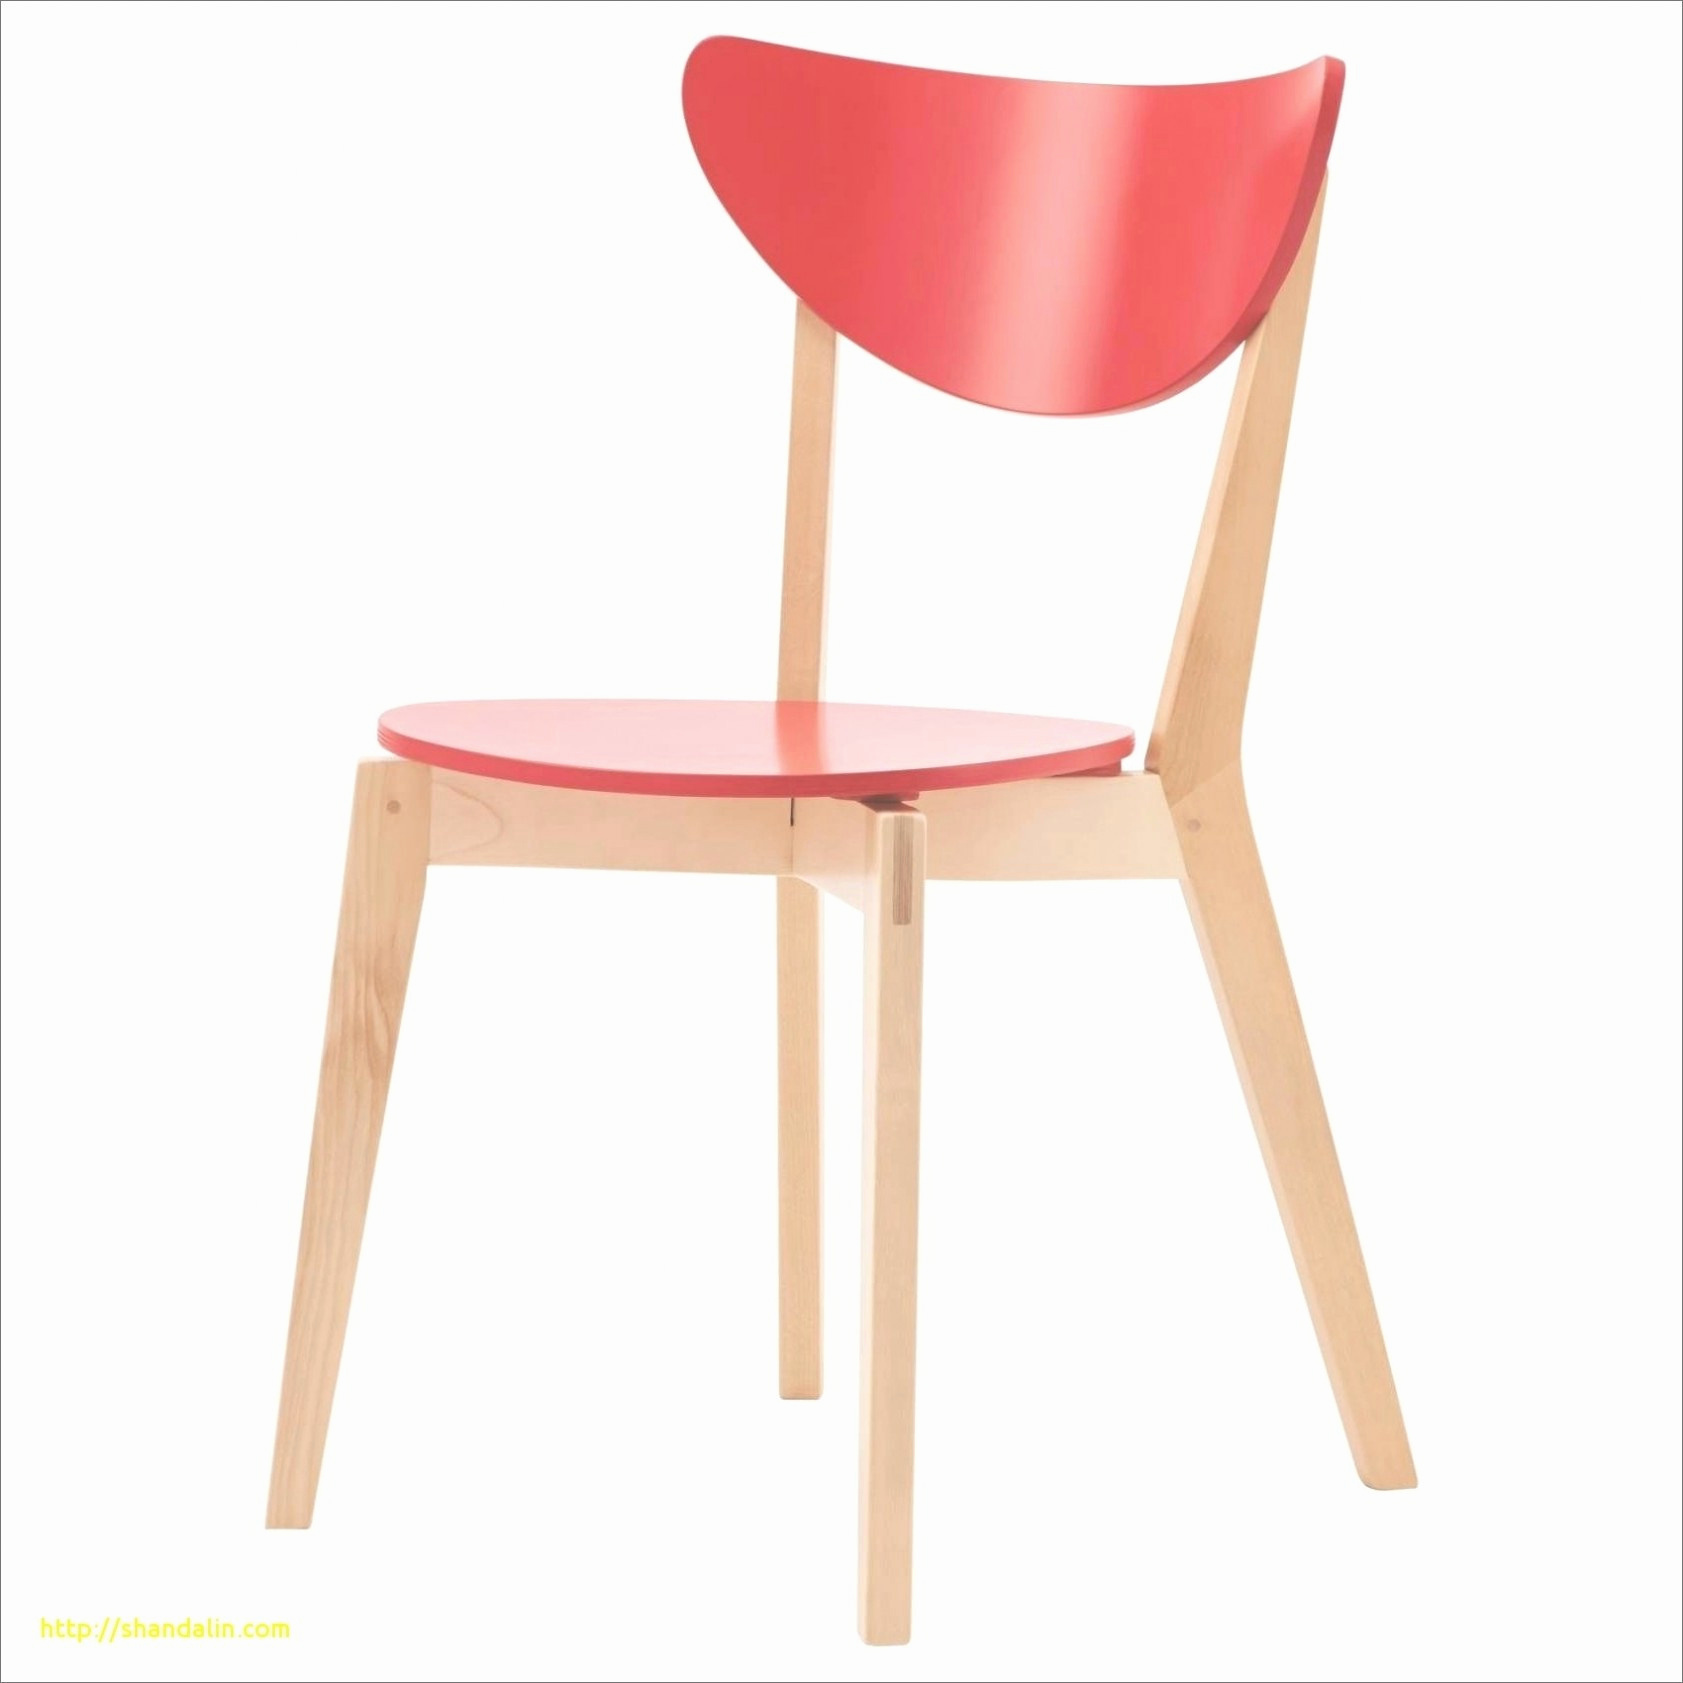 chaise fabrication francaise luxe 35 nouveau chaise fabrication francaise idees inspirantes of chaise fabrication francaise